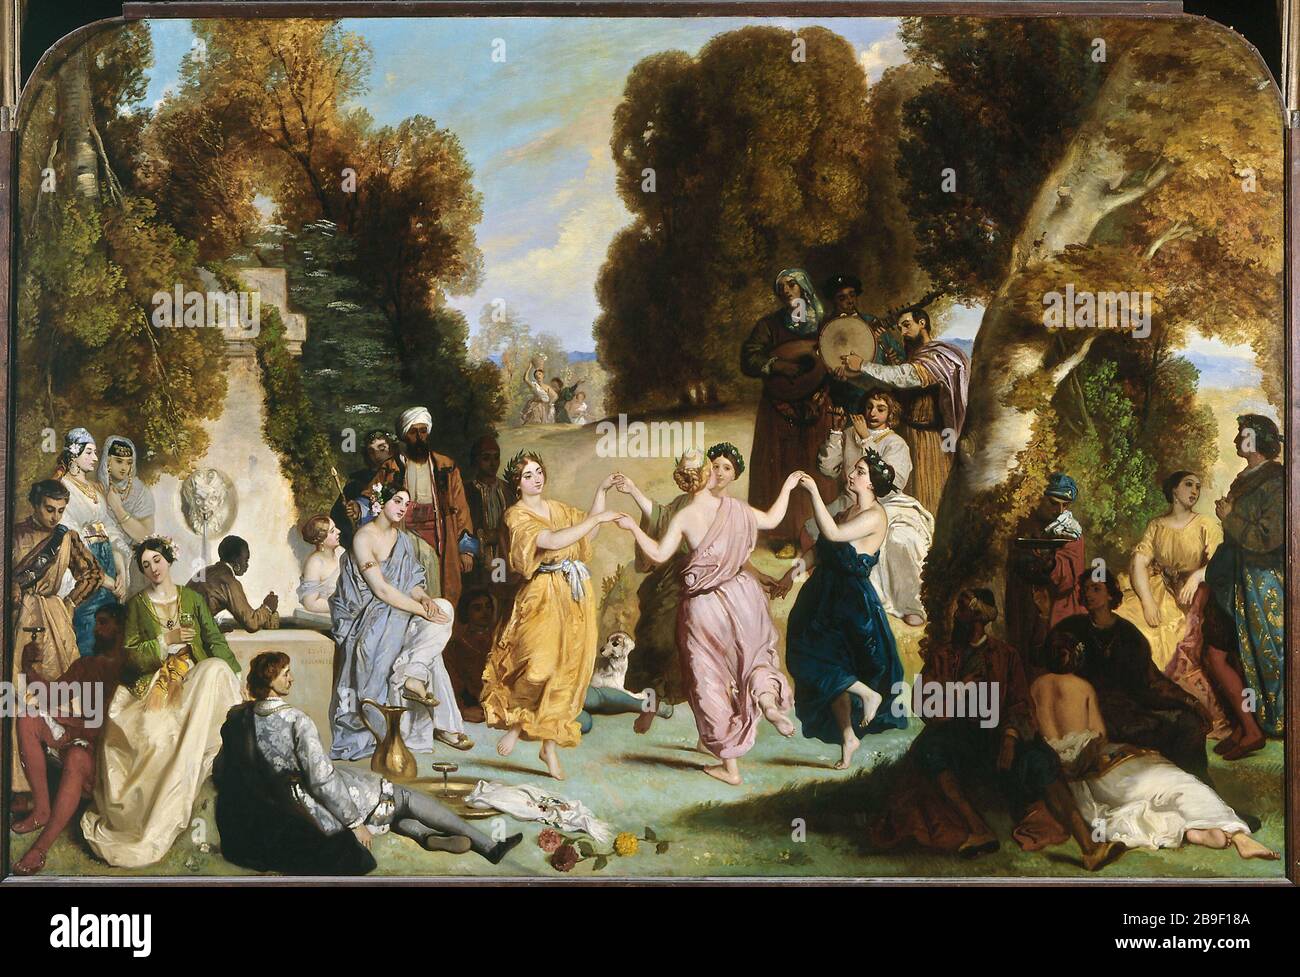 DANCE OF MUSES Louis Boulanger (1806-1867). 'La danse des muses'. Huile sur toile. Paris, musée Carnavalet. Stock Photo